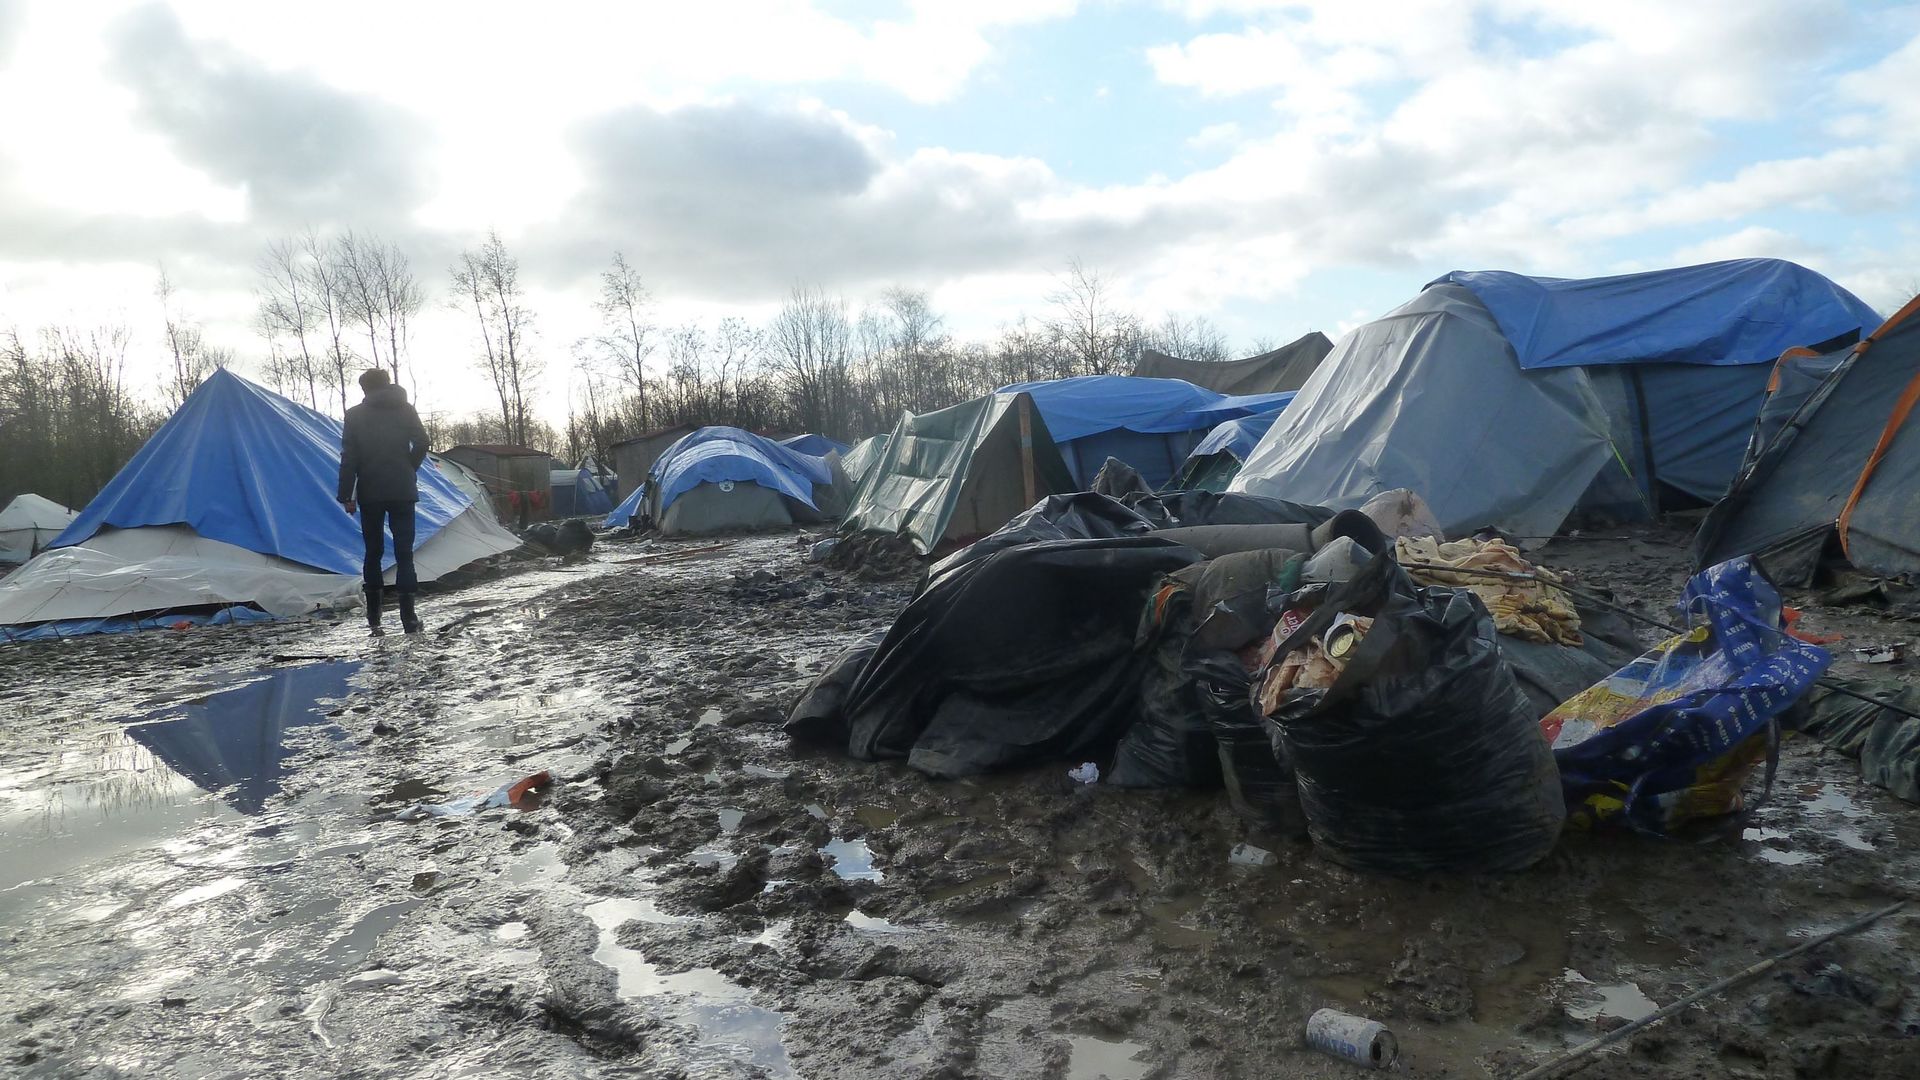 Des tentes fragiles, exposées au vent, au froid et à la boue.